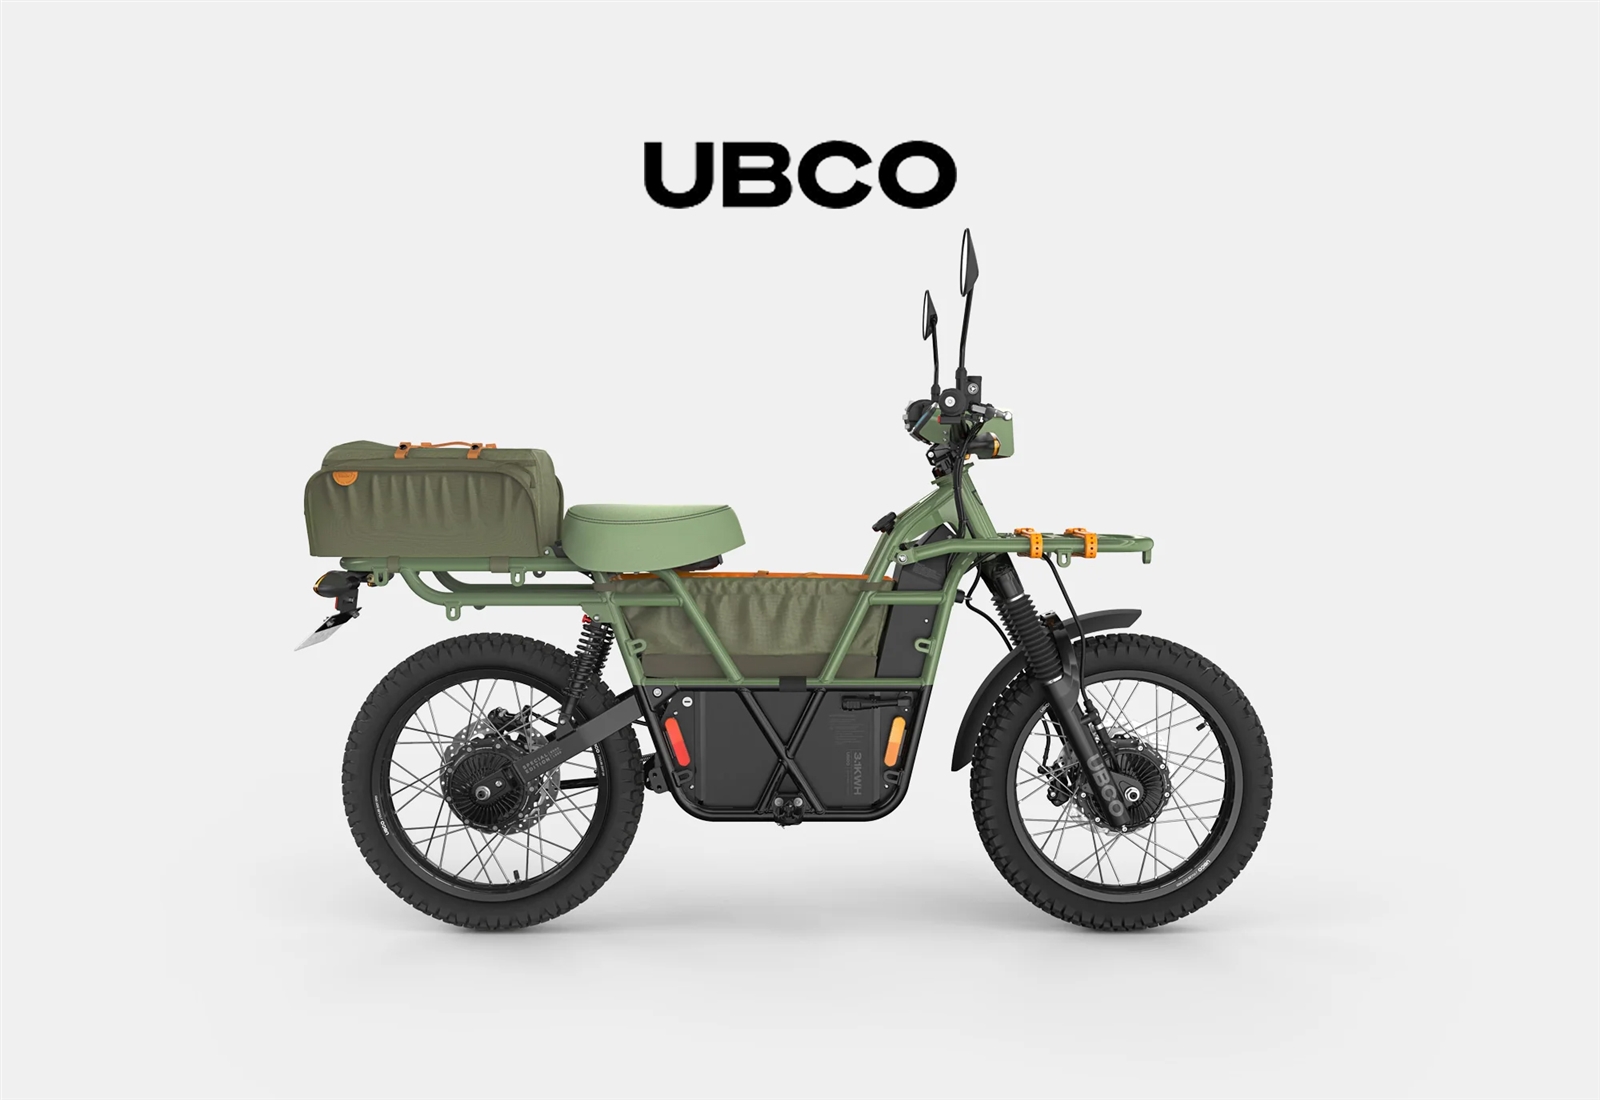 Ubco es la última incorporación a nuestras marcas - Ridewill Magazine